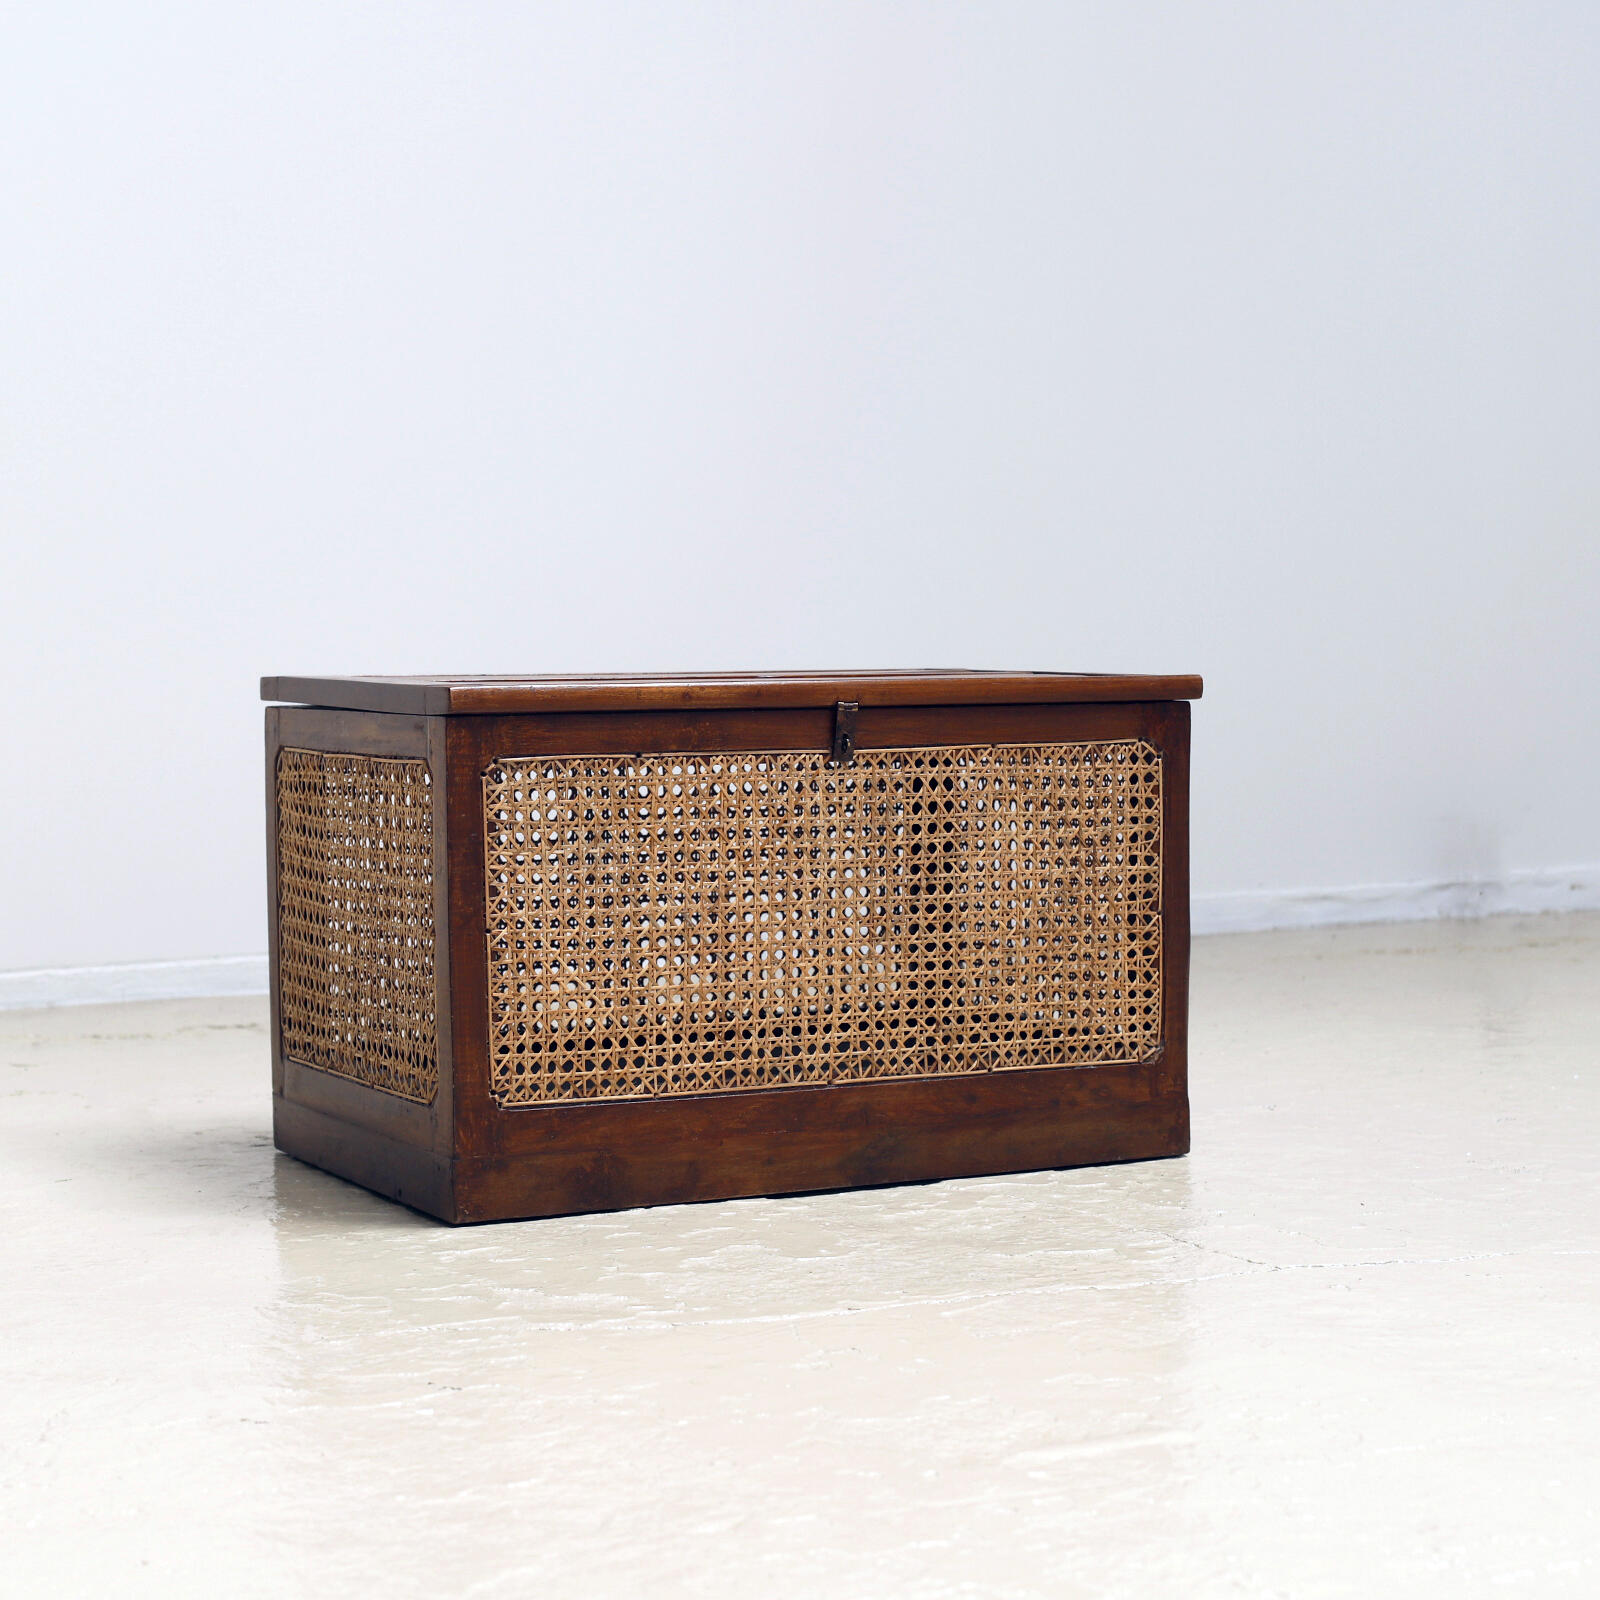 Linen Basket by Pierre Jeanneret - Objet d' art